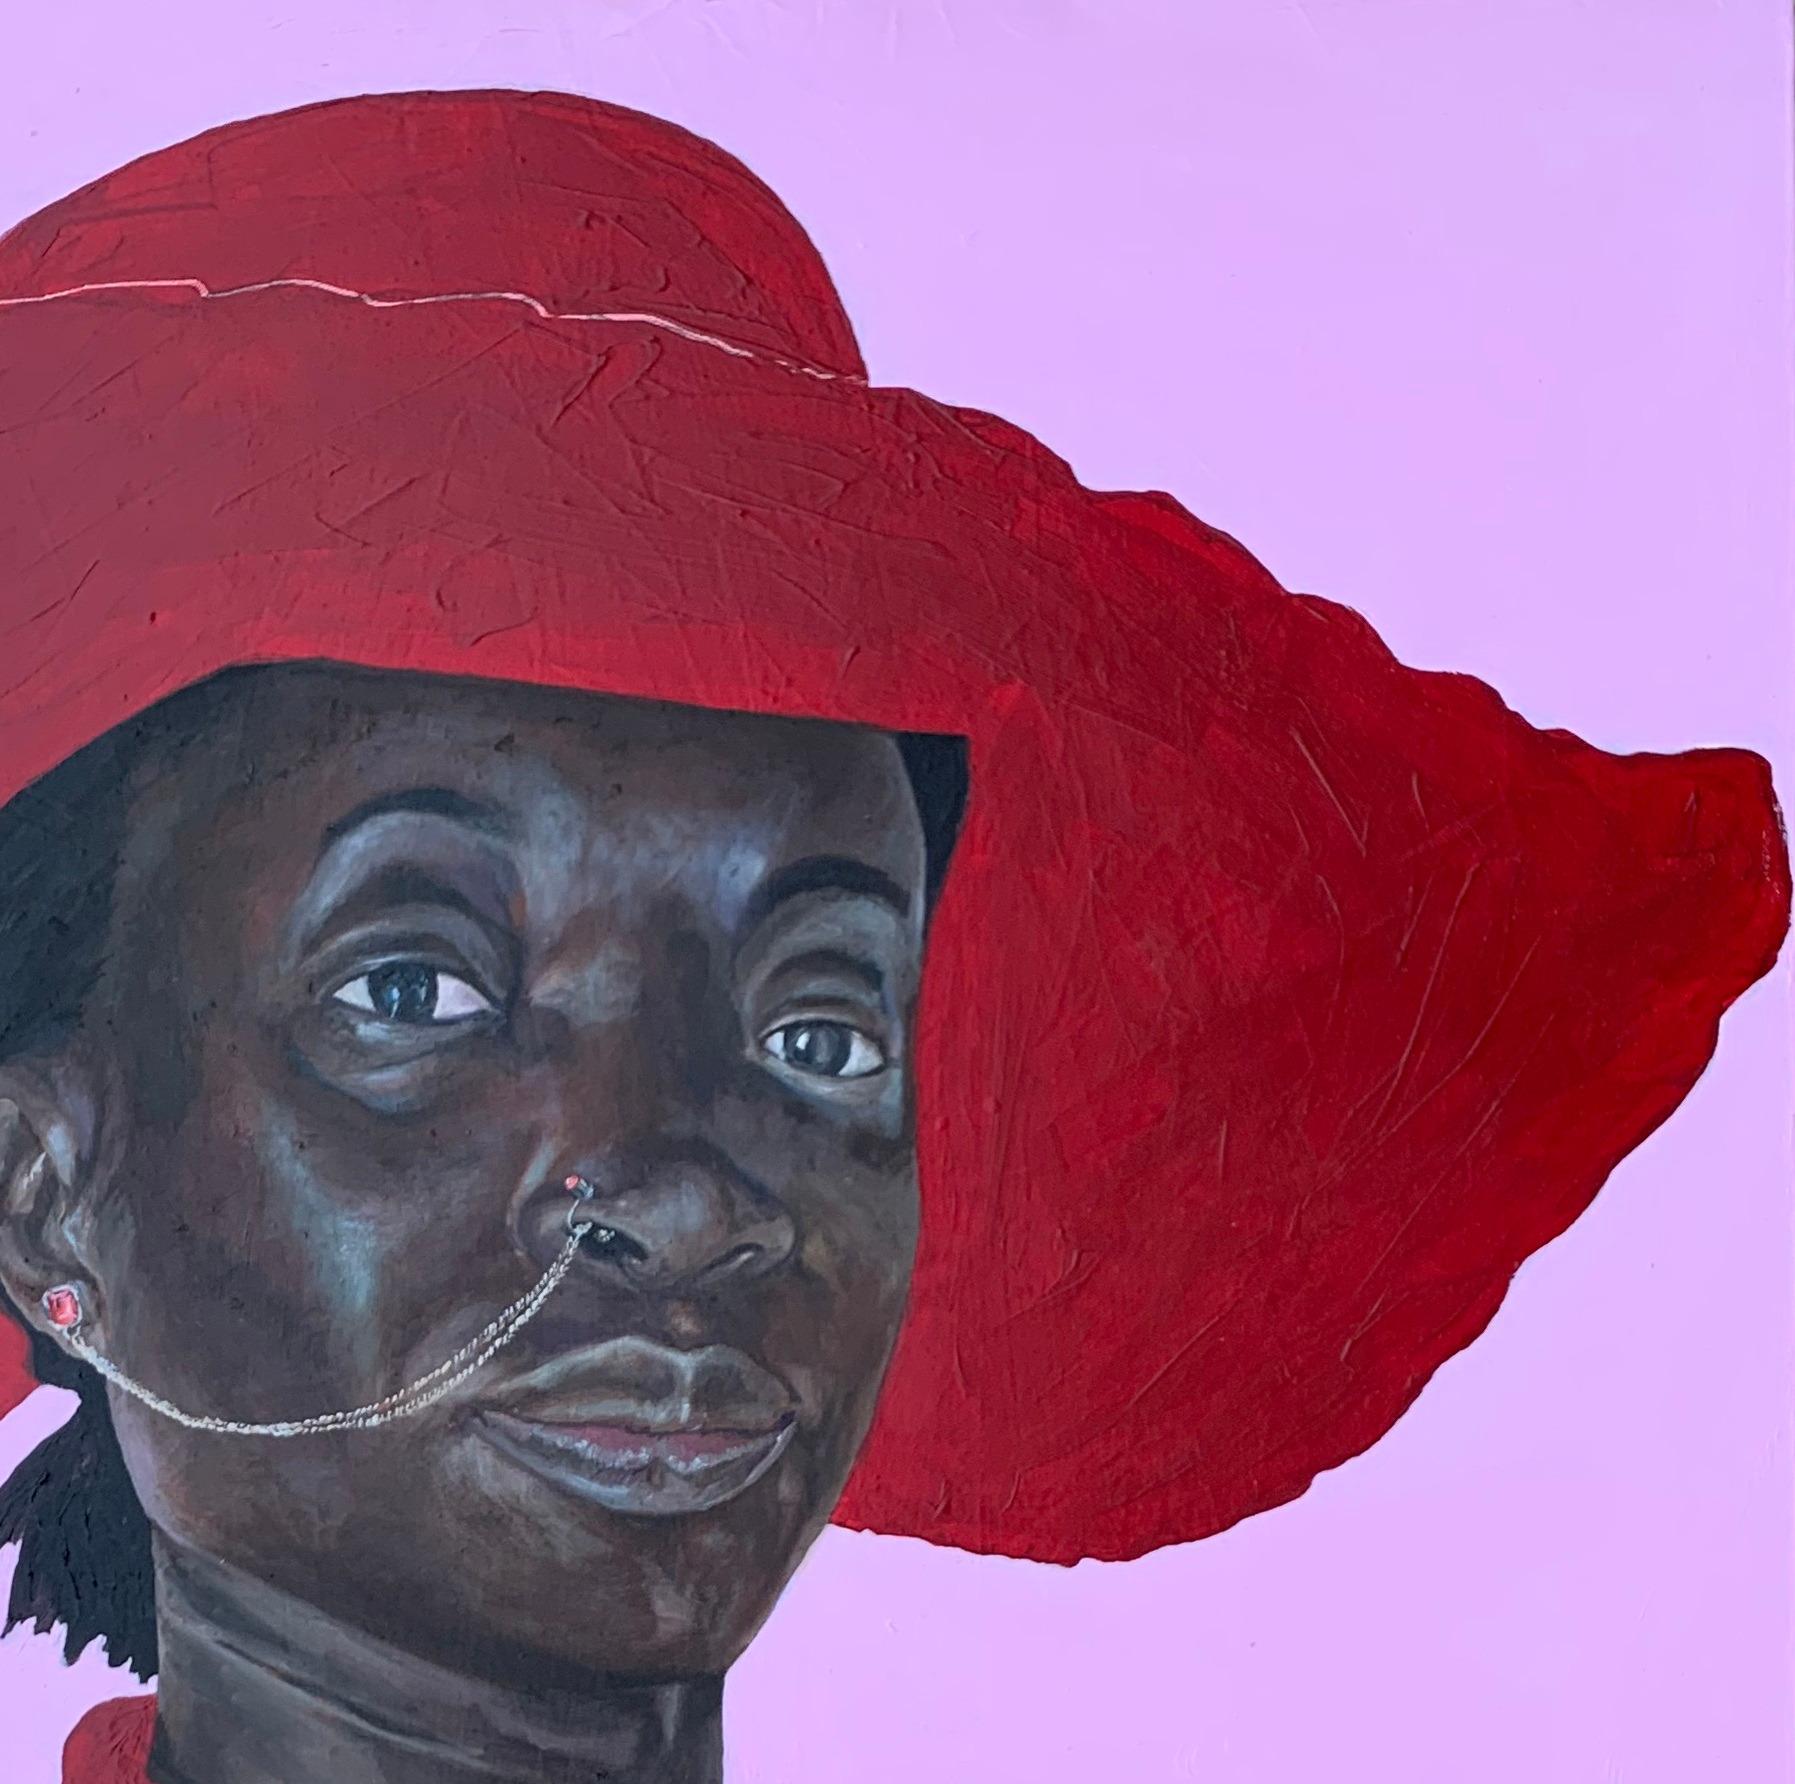 Bijoux et chaîne I - Contemporain Painting par Bukola Orioye